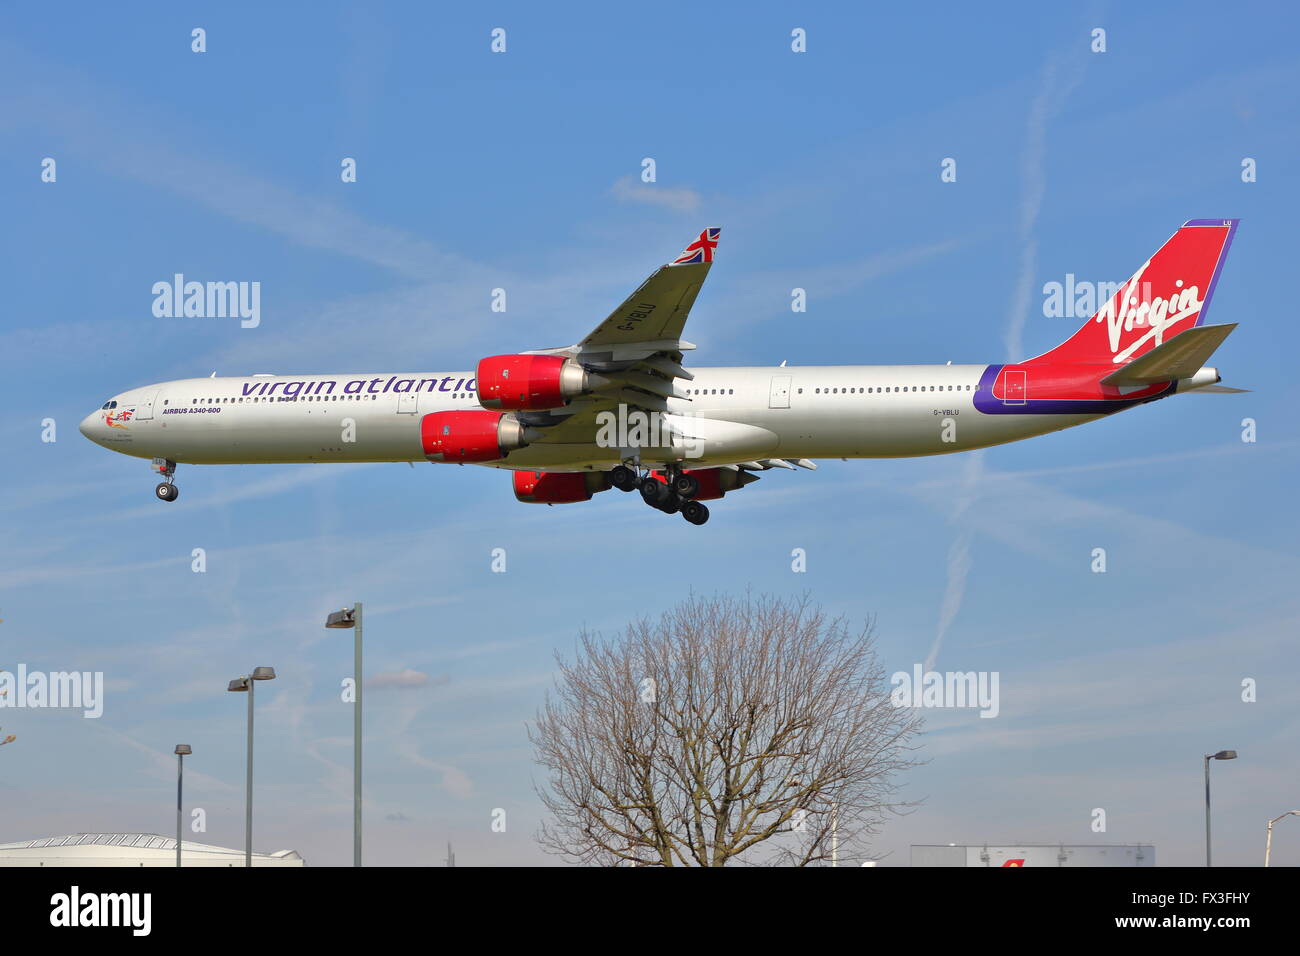 Virgin Atlantic Airbus A340-600 G-VBLU arrivant à l'aéroport Heathrow de Londres, UK Banque D'Images